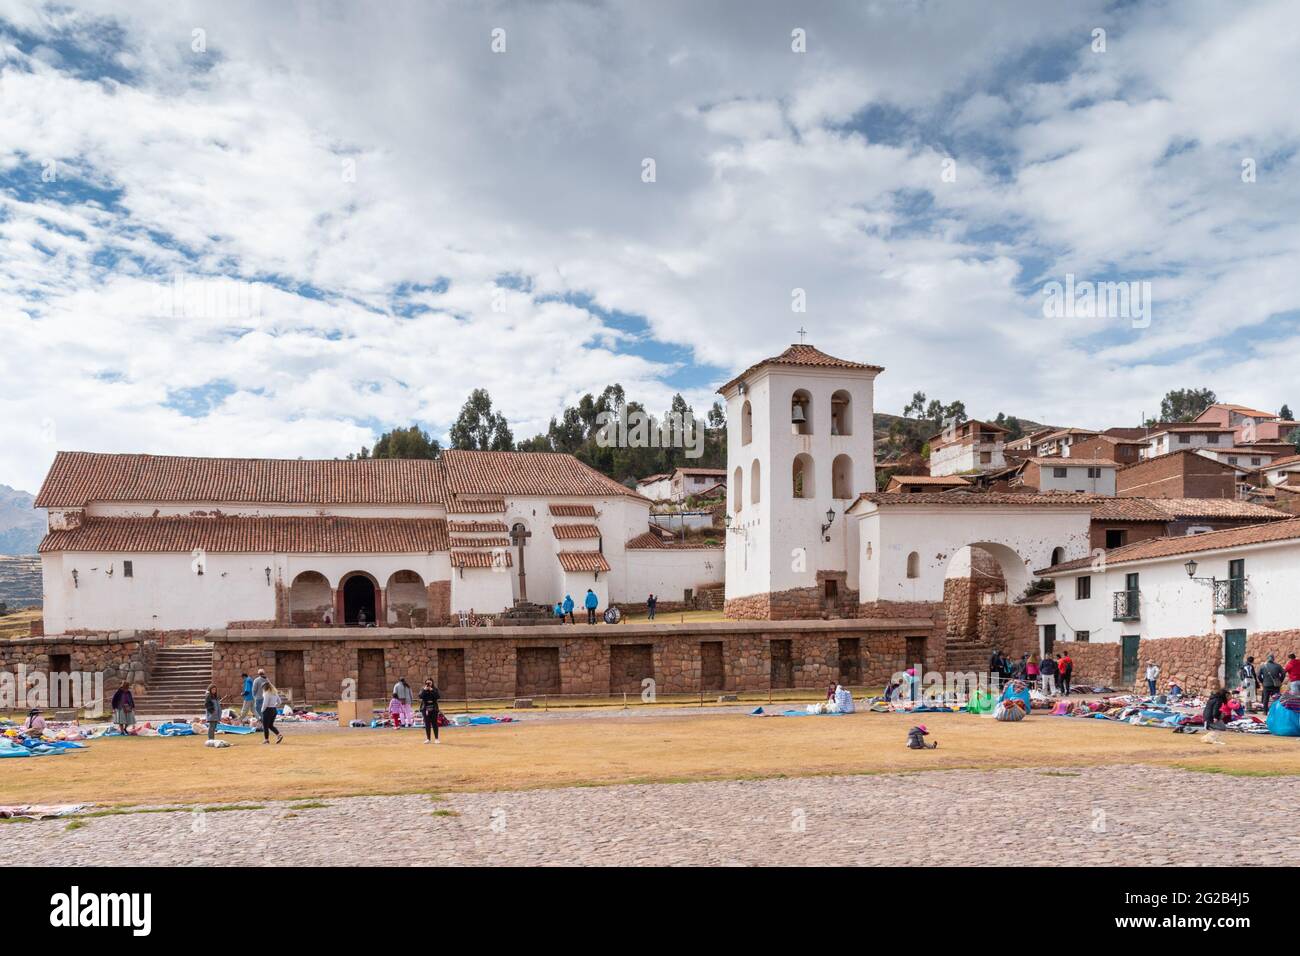 Des vendeurs vendent des souvenirs et de l'artisanat aux touristes sur la plaza dans le village historique de Chinchero, construit sur les ruines de l'Inca dans la vallée sacrée du Pérou Banque D'Images